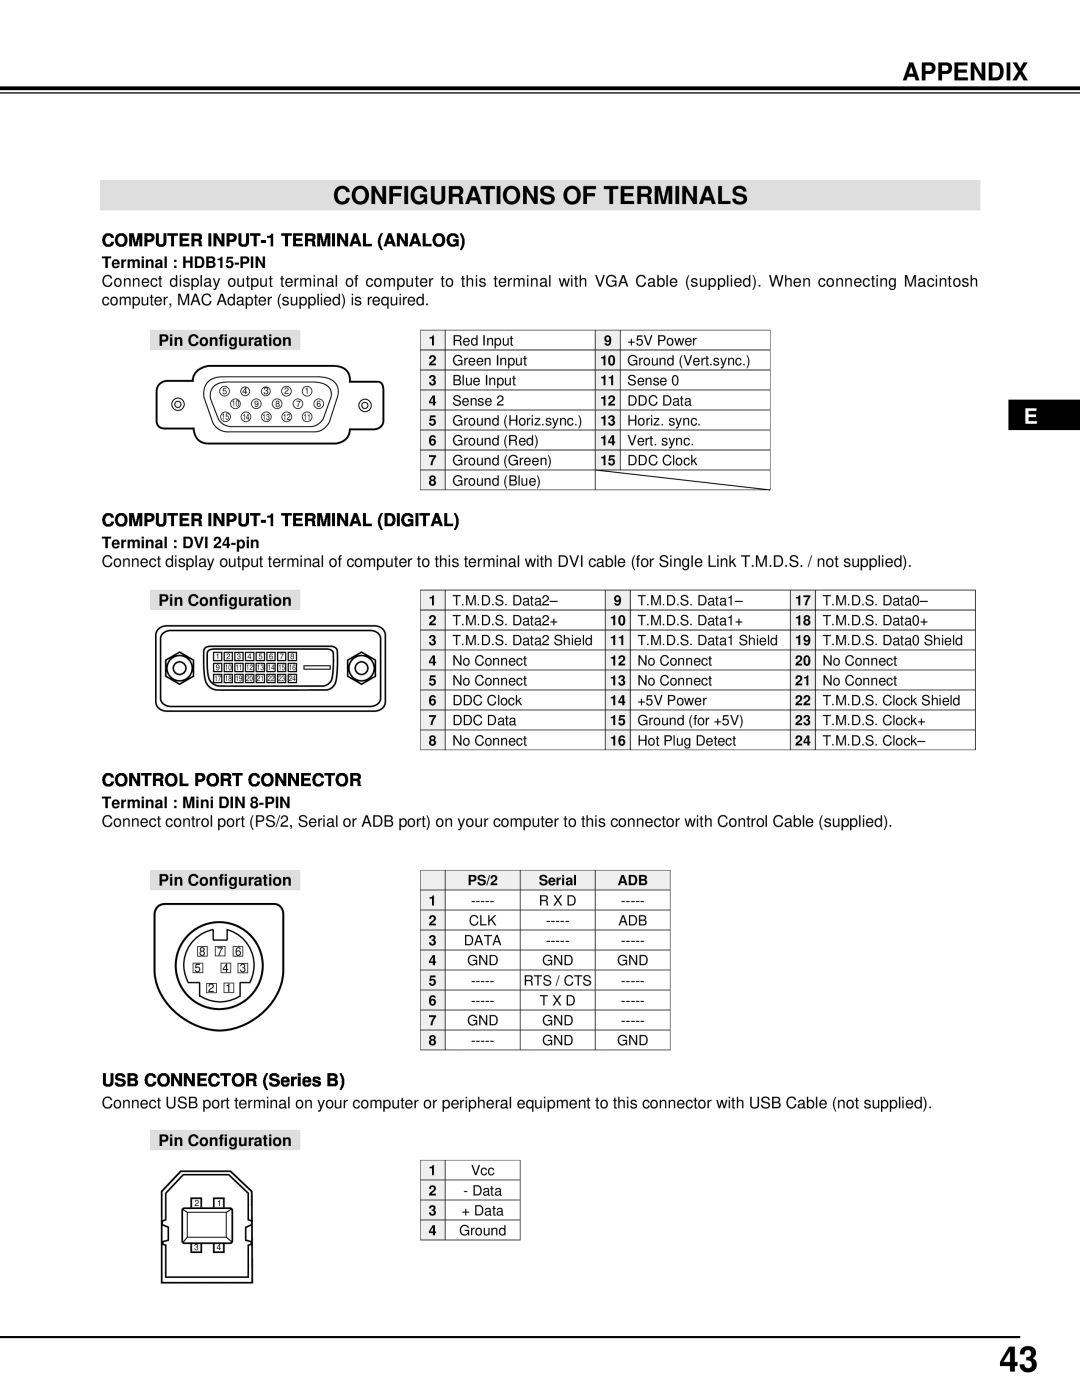 InFocus DP9295 manual Appendix Configurations Of Terminals, Terminal HDB15-PIN, Pin Configuration, Terminal DVI 24-pin 